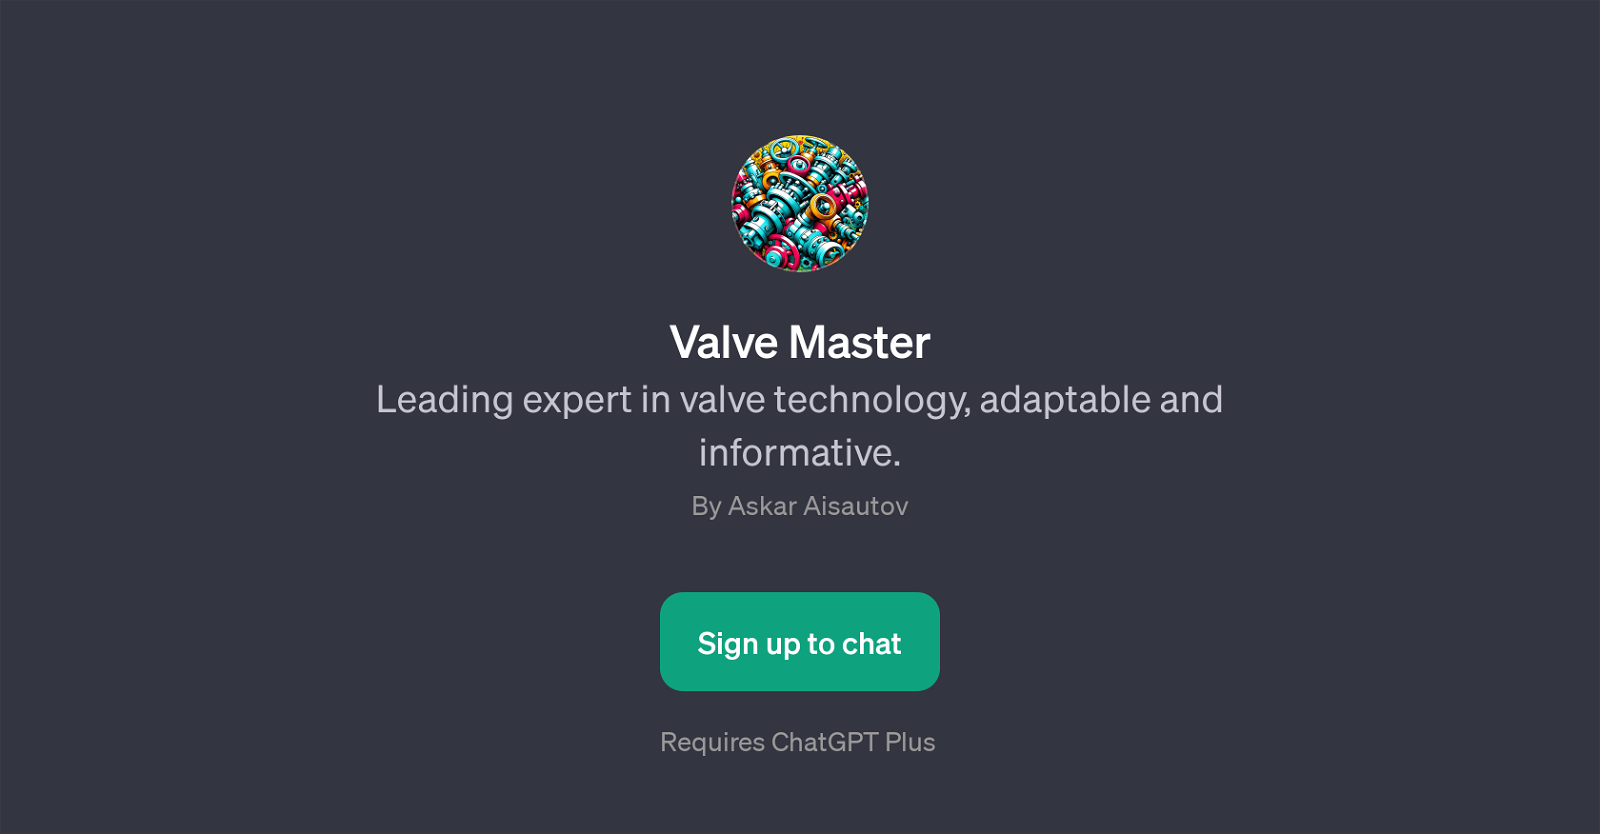 Valve Master website